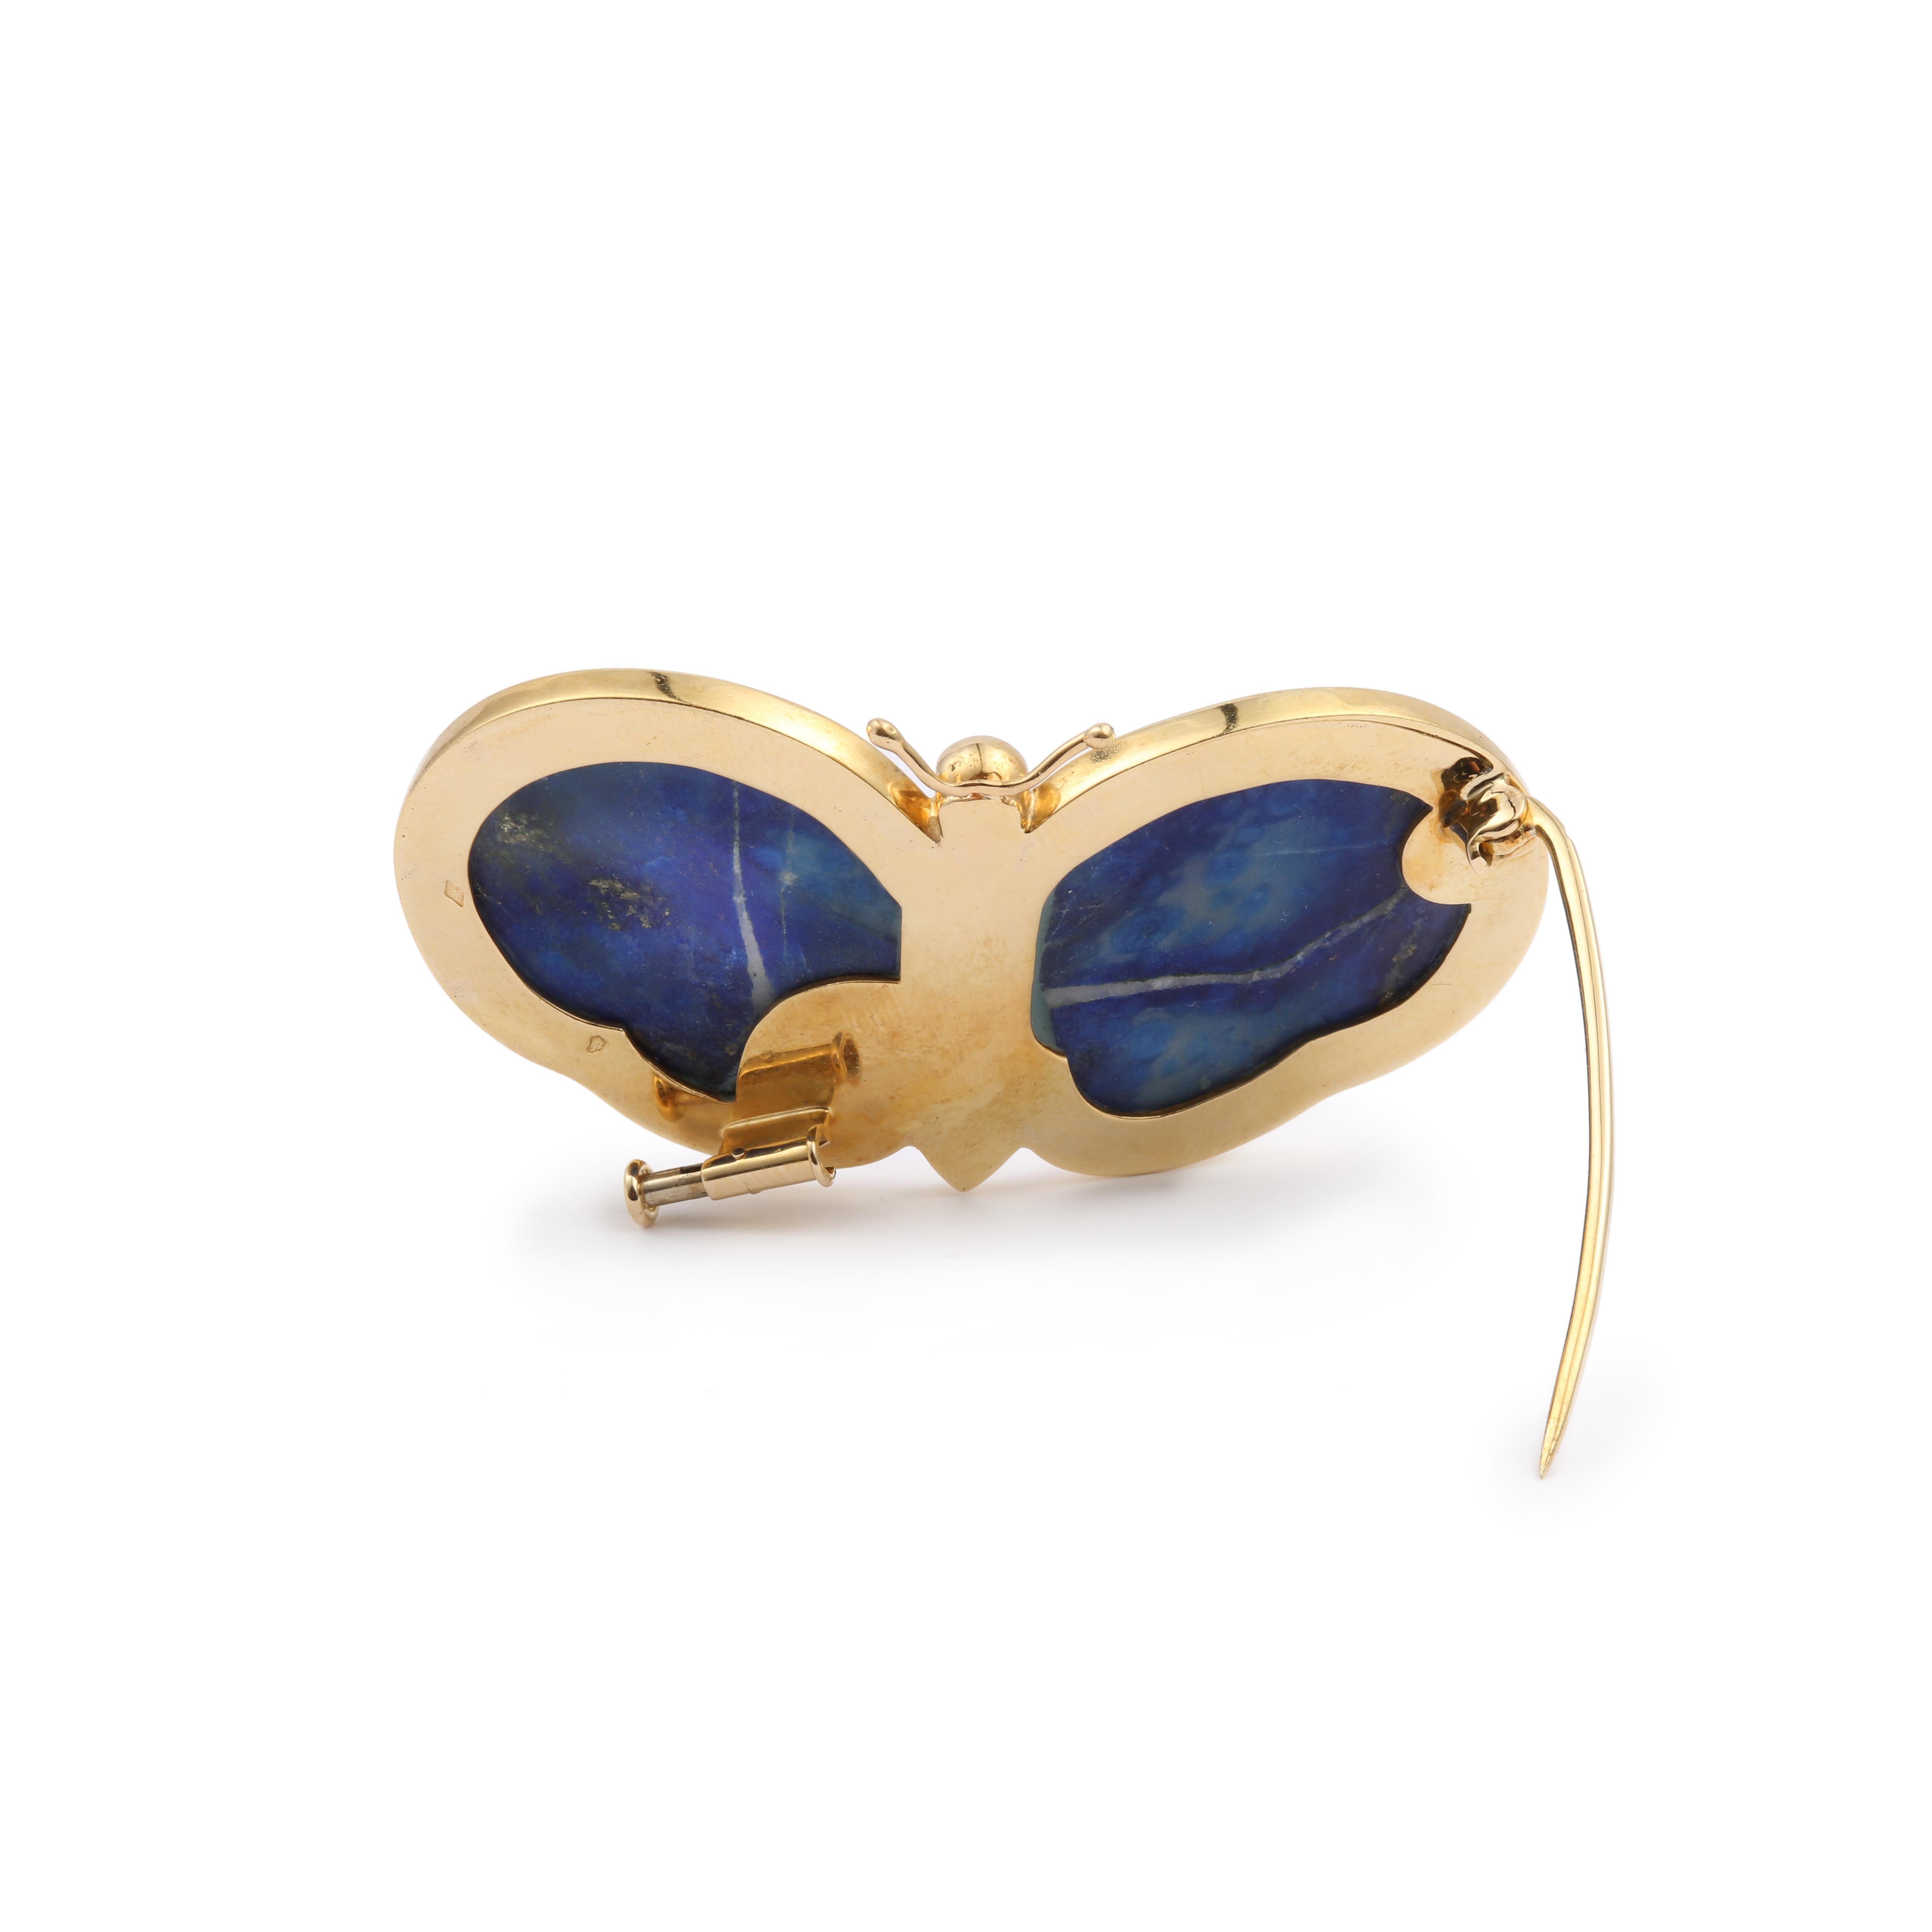 Broche papillon en or jaune avec corps en jaspe et ailes en lapis-lazuli.

Dimensions : 54 x 28,49 x 8,70 mm (2,126 x 1,121 x 0,342 pouce)

Poids de la broche : 15 g

Fermoir à piston.

Travail français vers 1970

Or jaune 18 carats, 750/1000e